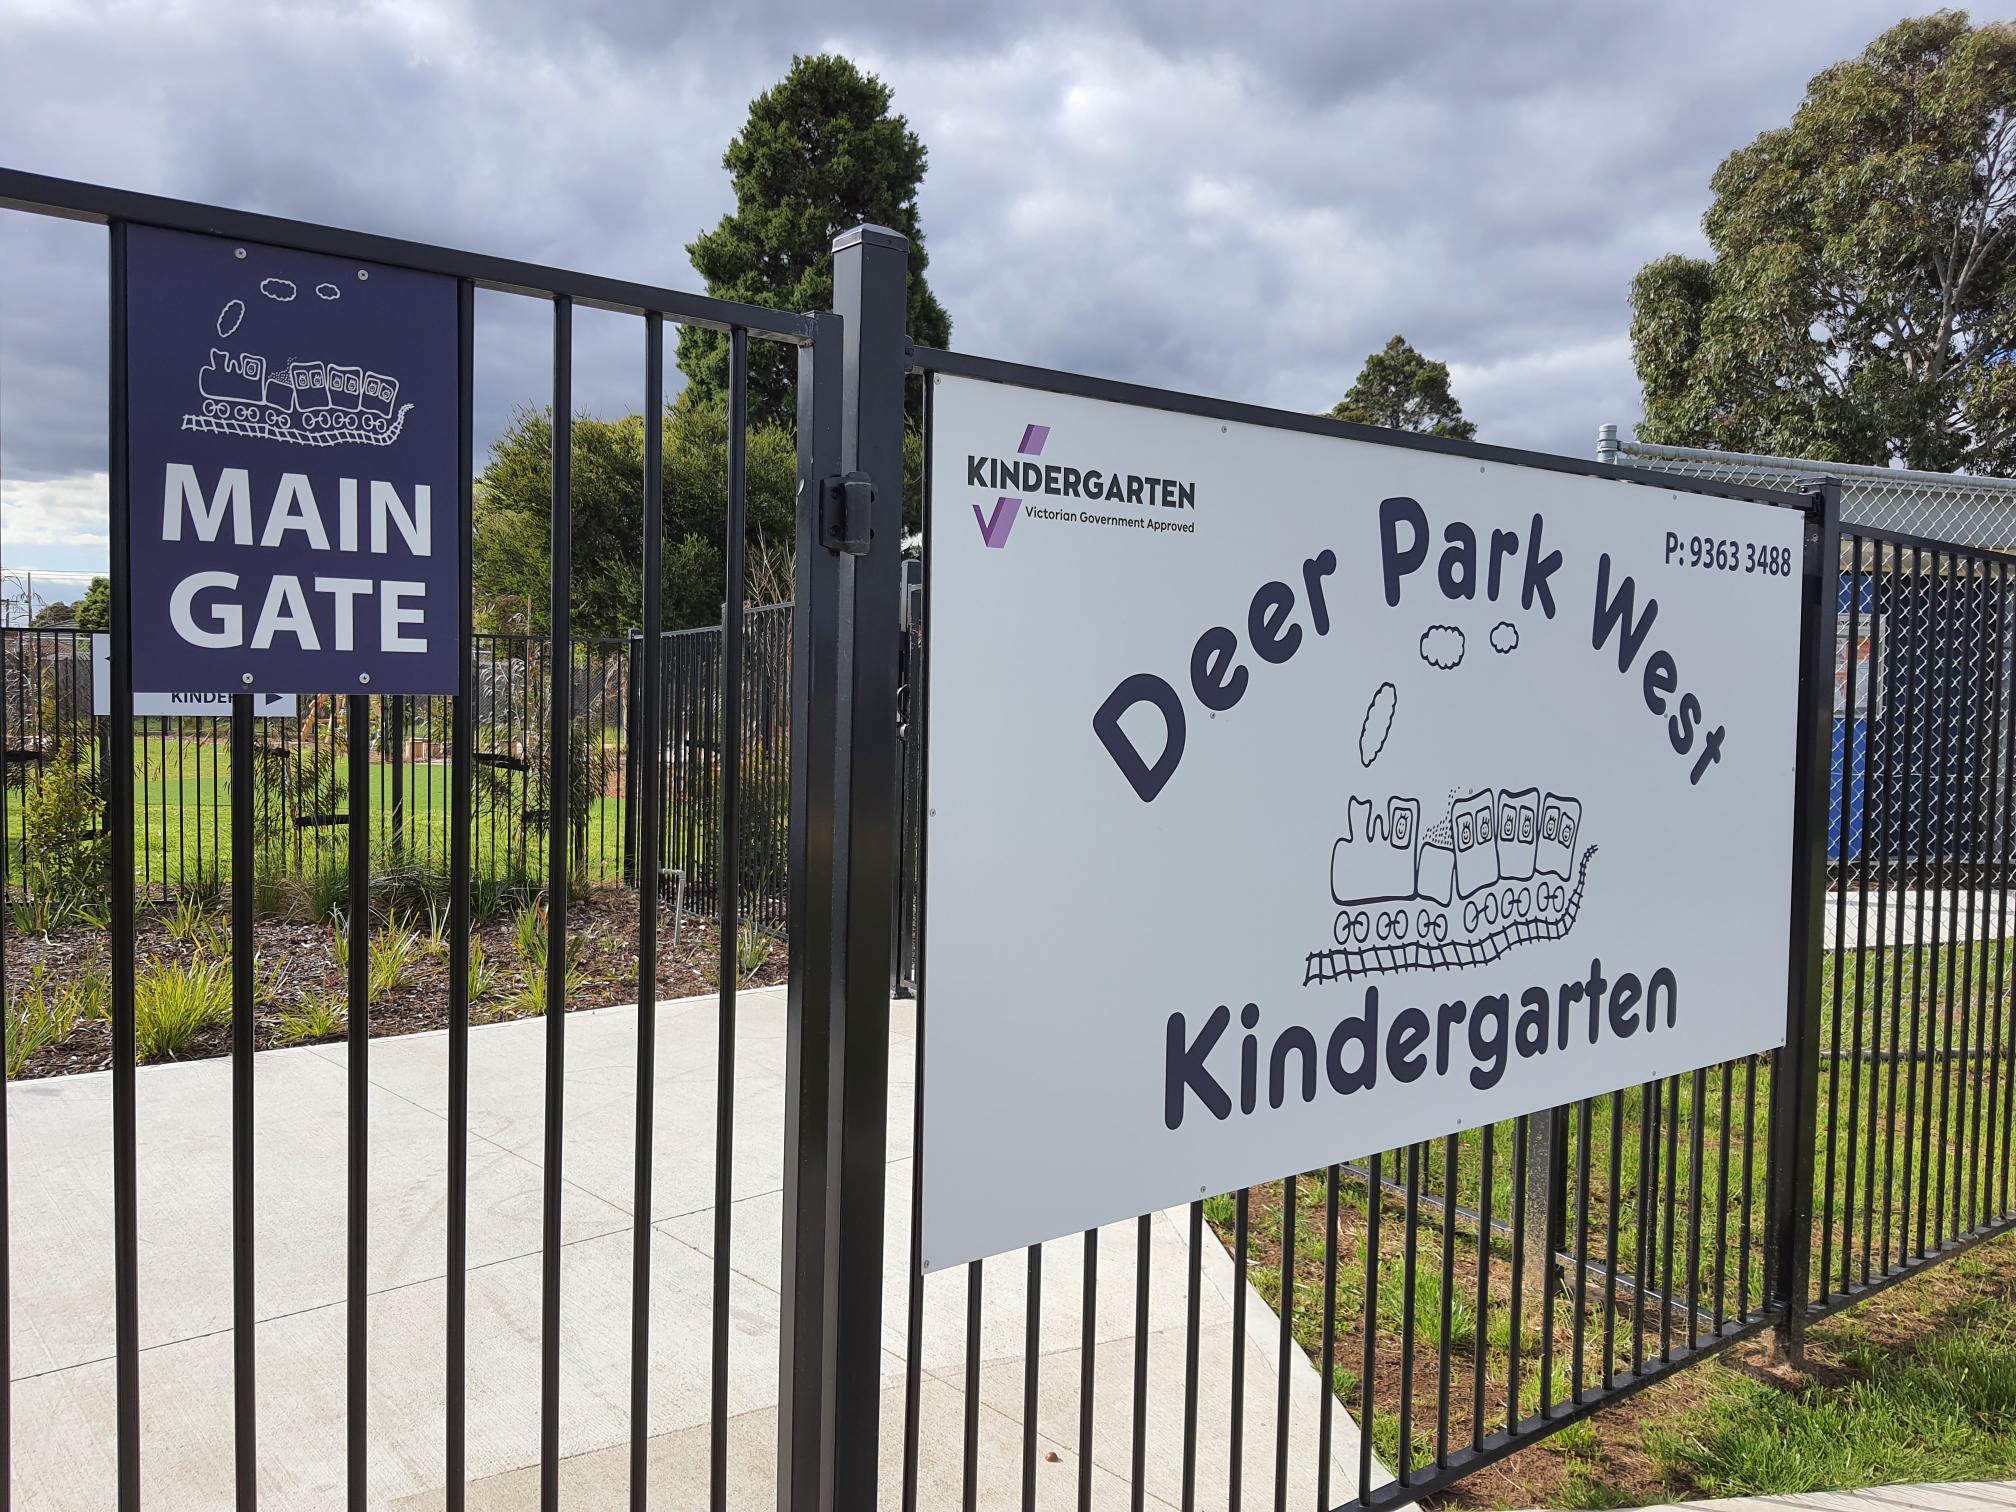 Deer Park West Kindergarten Play area